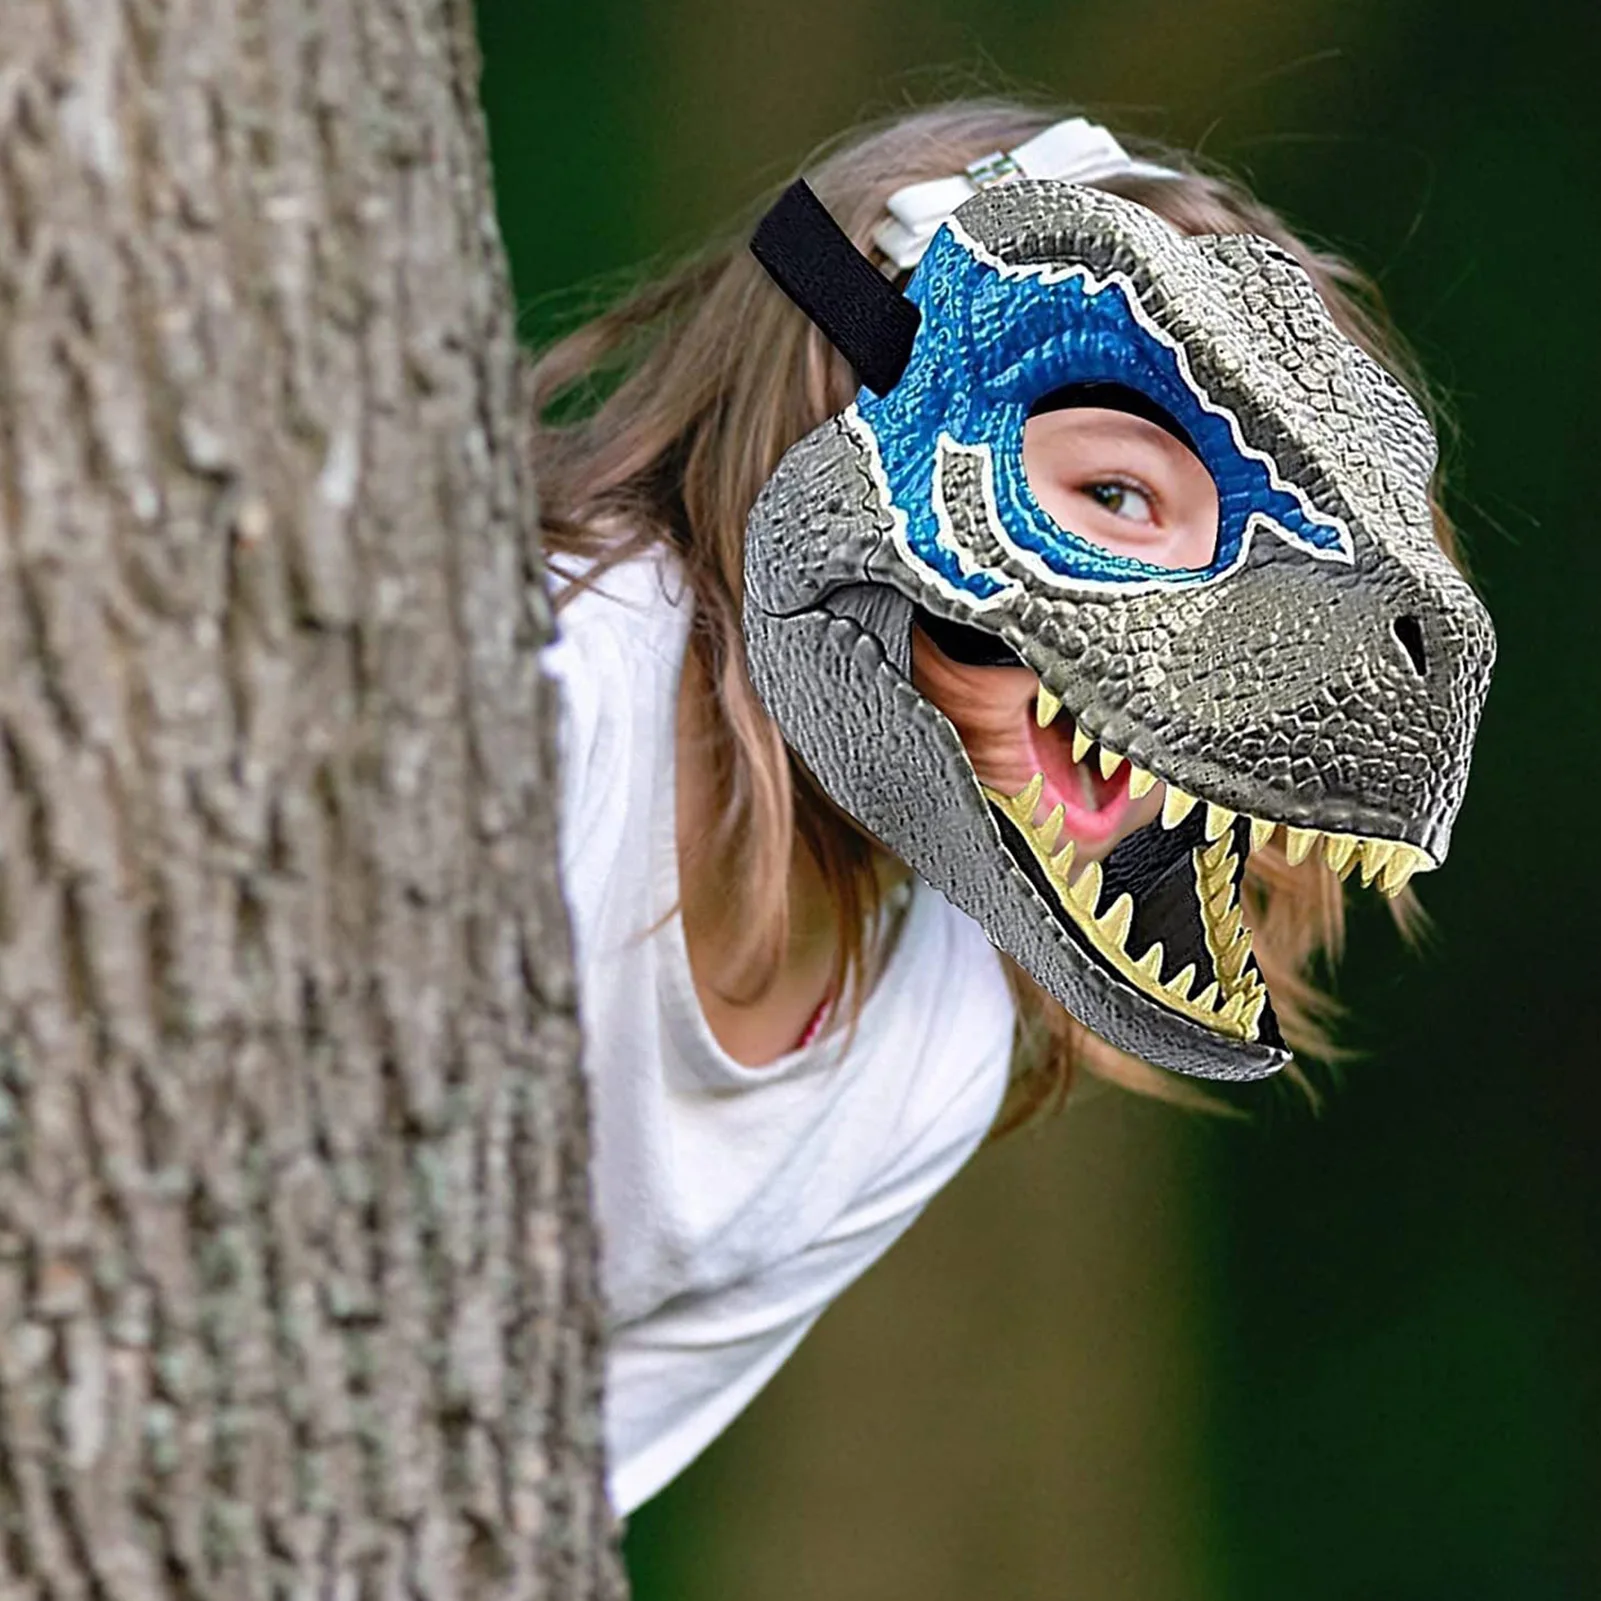 Aosekaa Conjuntos de asa de máscara de dinossauro Adultos Acessórios de  fantasia de dragão Encenação de fingir Adereços de jogo Vestir asa de dragão  para, Roxo